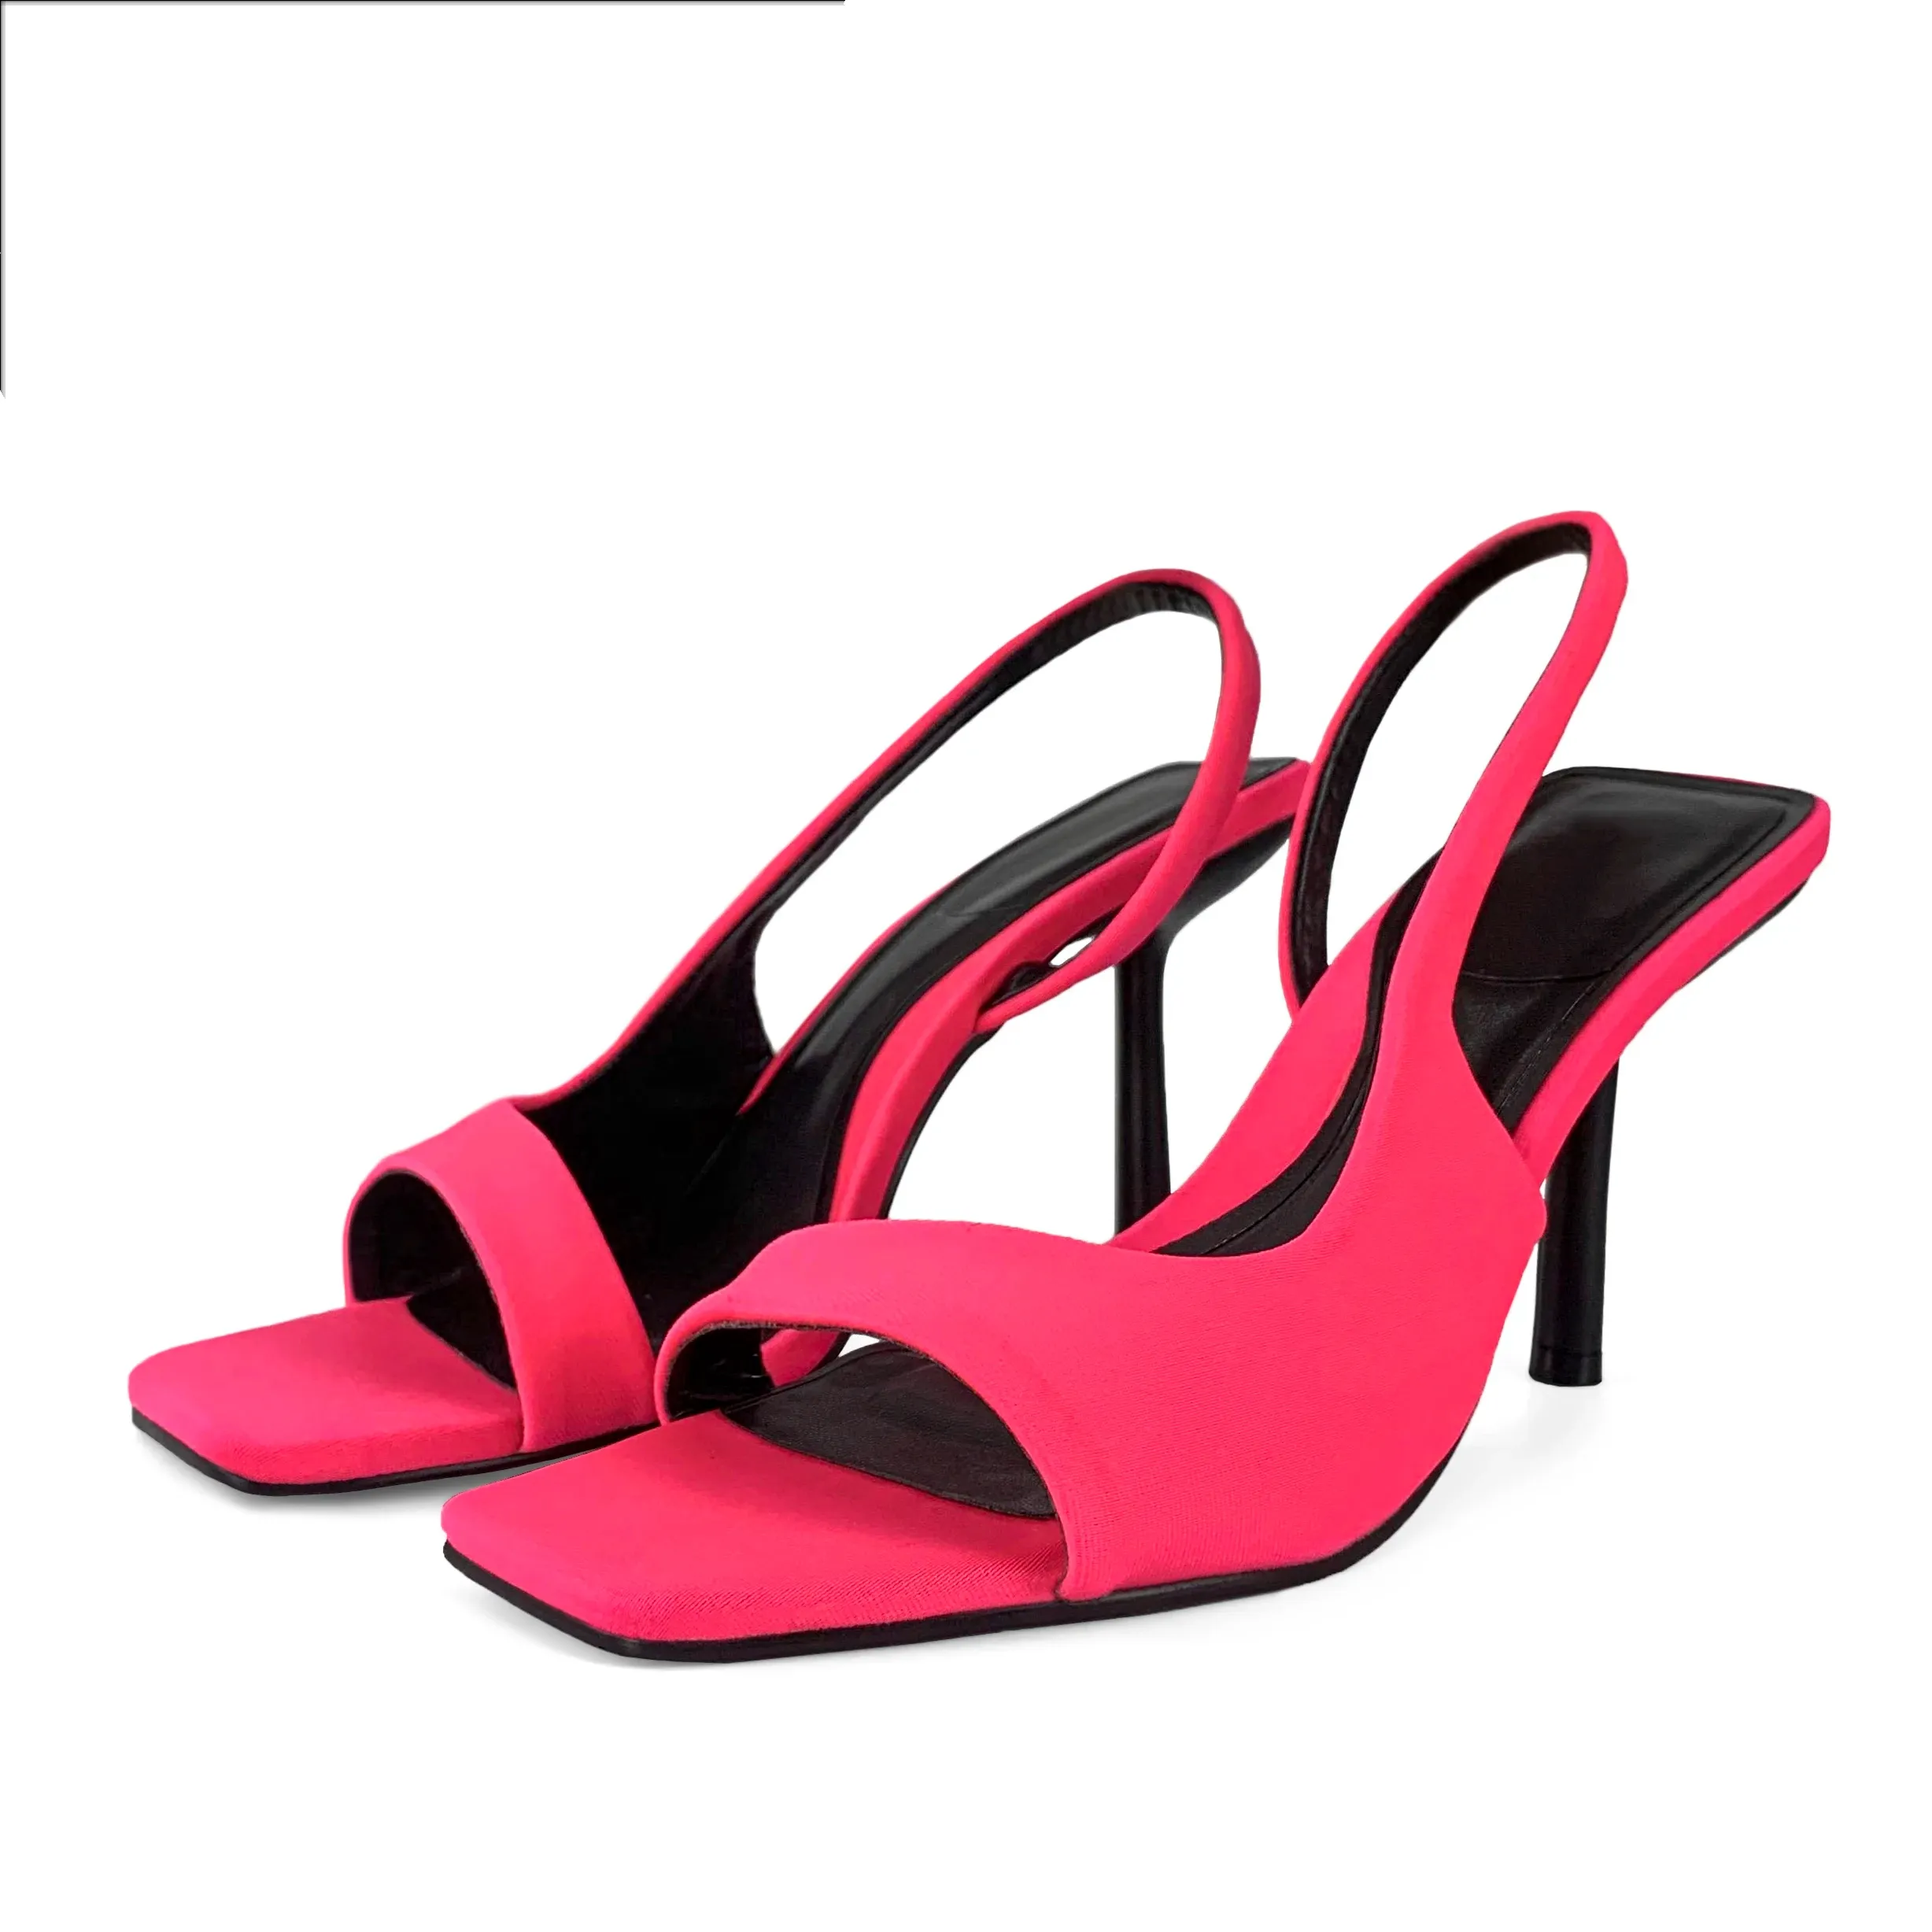 Sandálias de couro de salto alto personalizadas para mulheres, chaussures elegantes e elegantes de verão para noivas, chaussures clássicos e intemporais